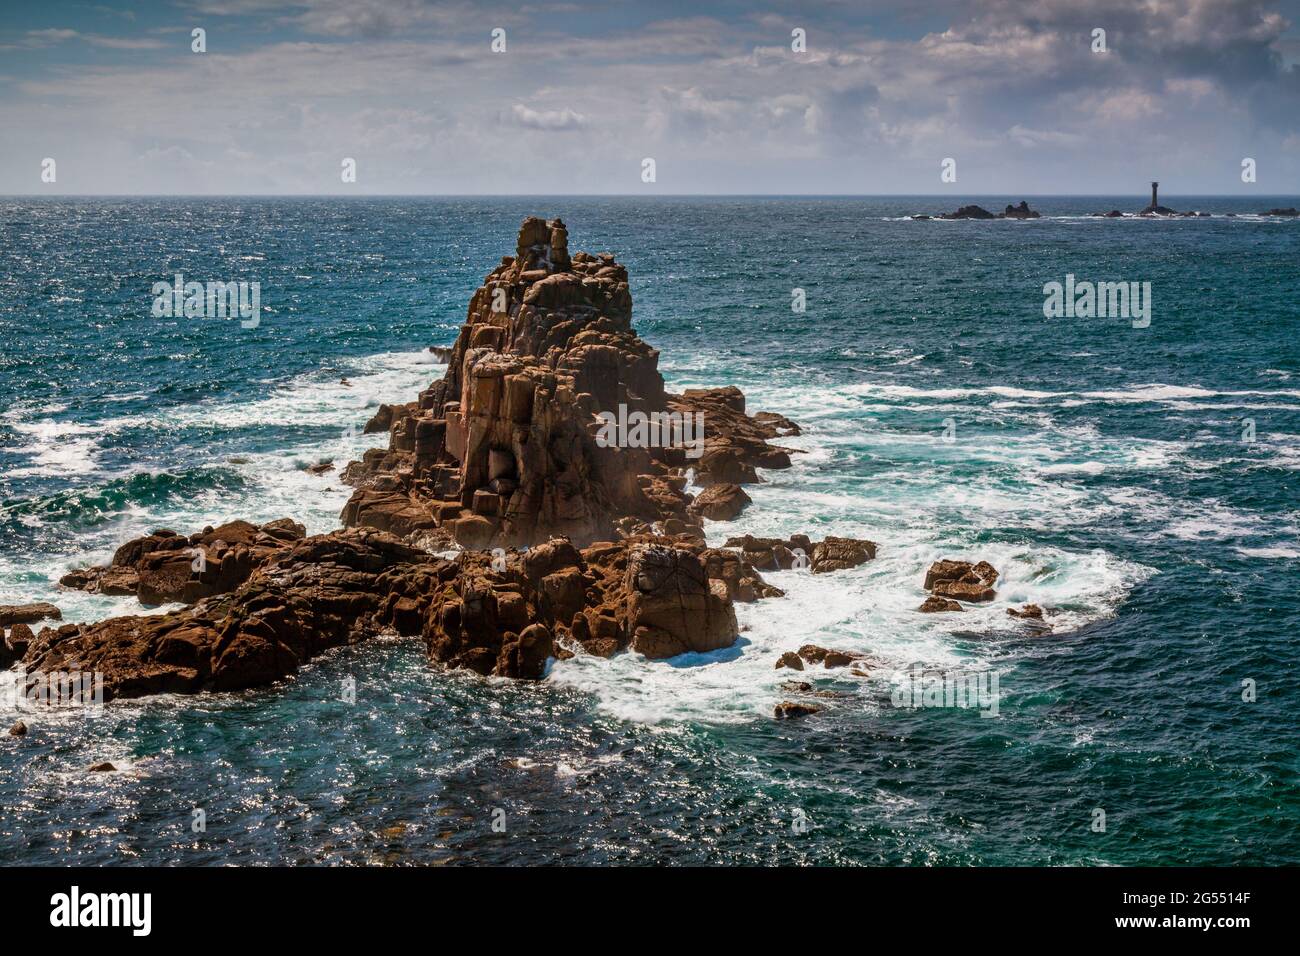 La mer tourbillonne autour de la formation rocheuse du Chevalier armé, à la fin du Land à Cornwall, avec le phare des Longships au loin. Banque D'Images